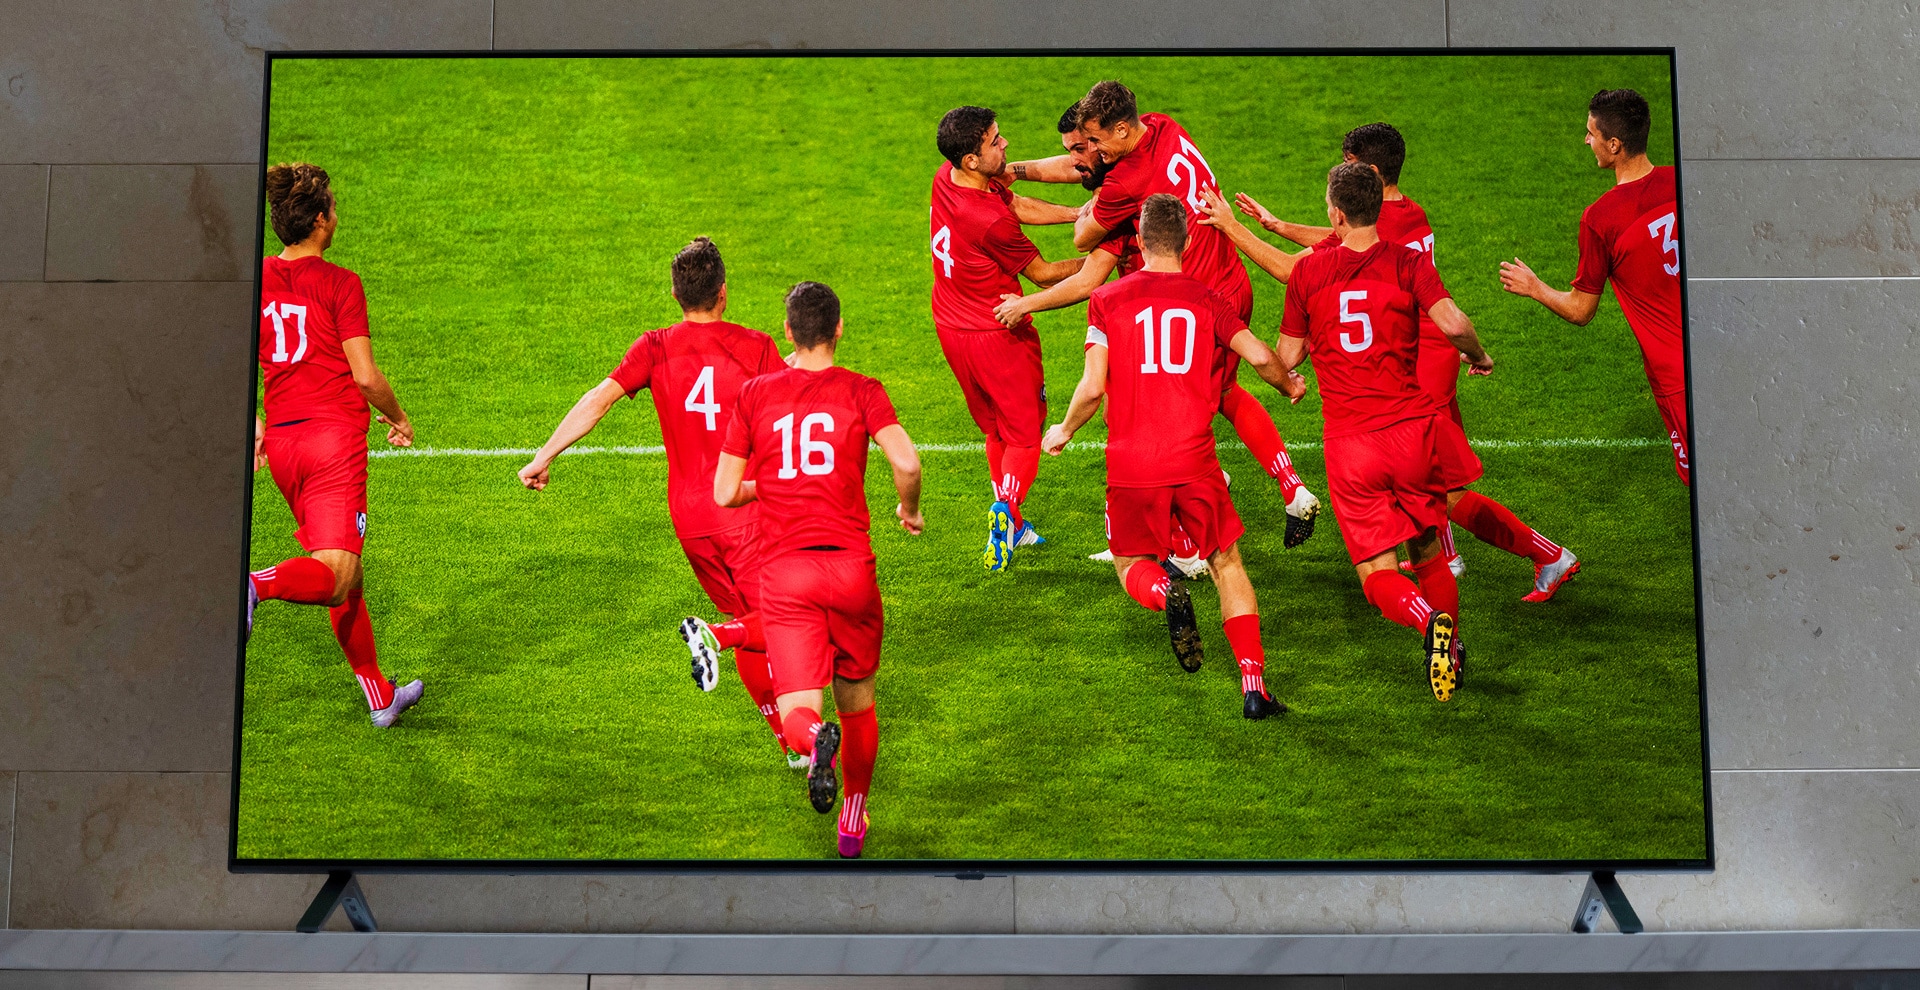 Un NanoCell TV está en un soporte de TV. Los jugadores están de celebración.